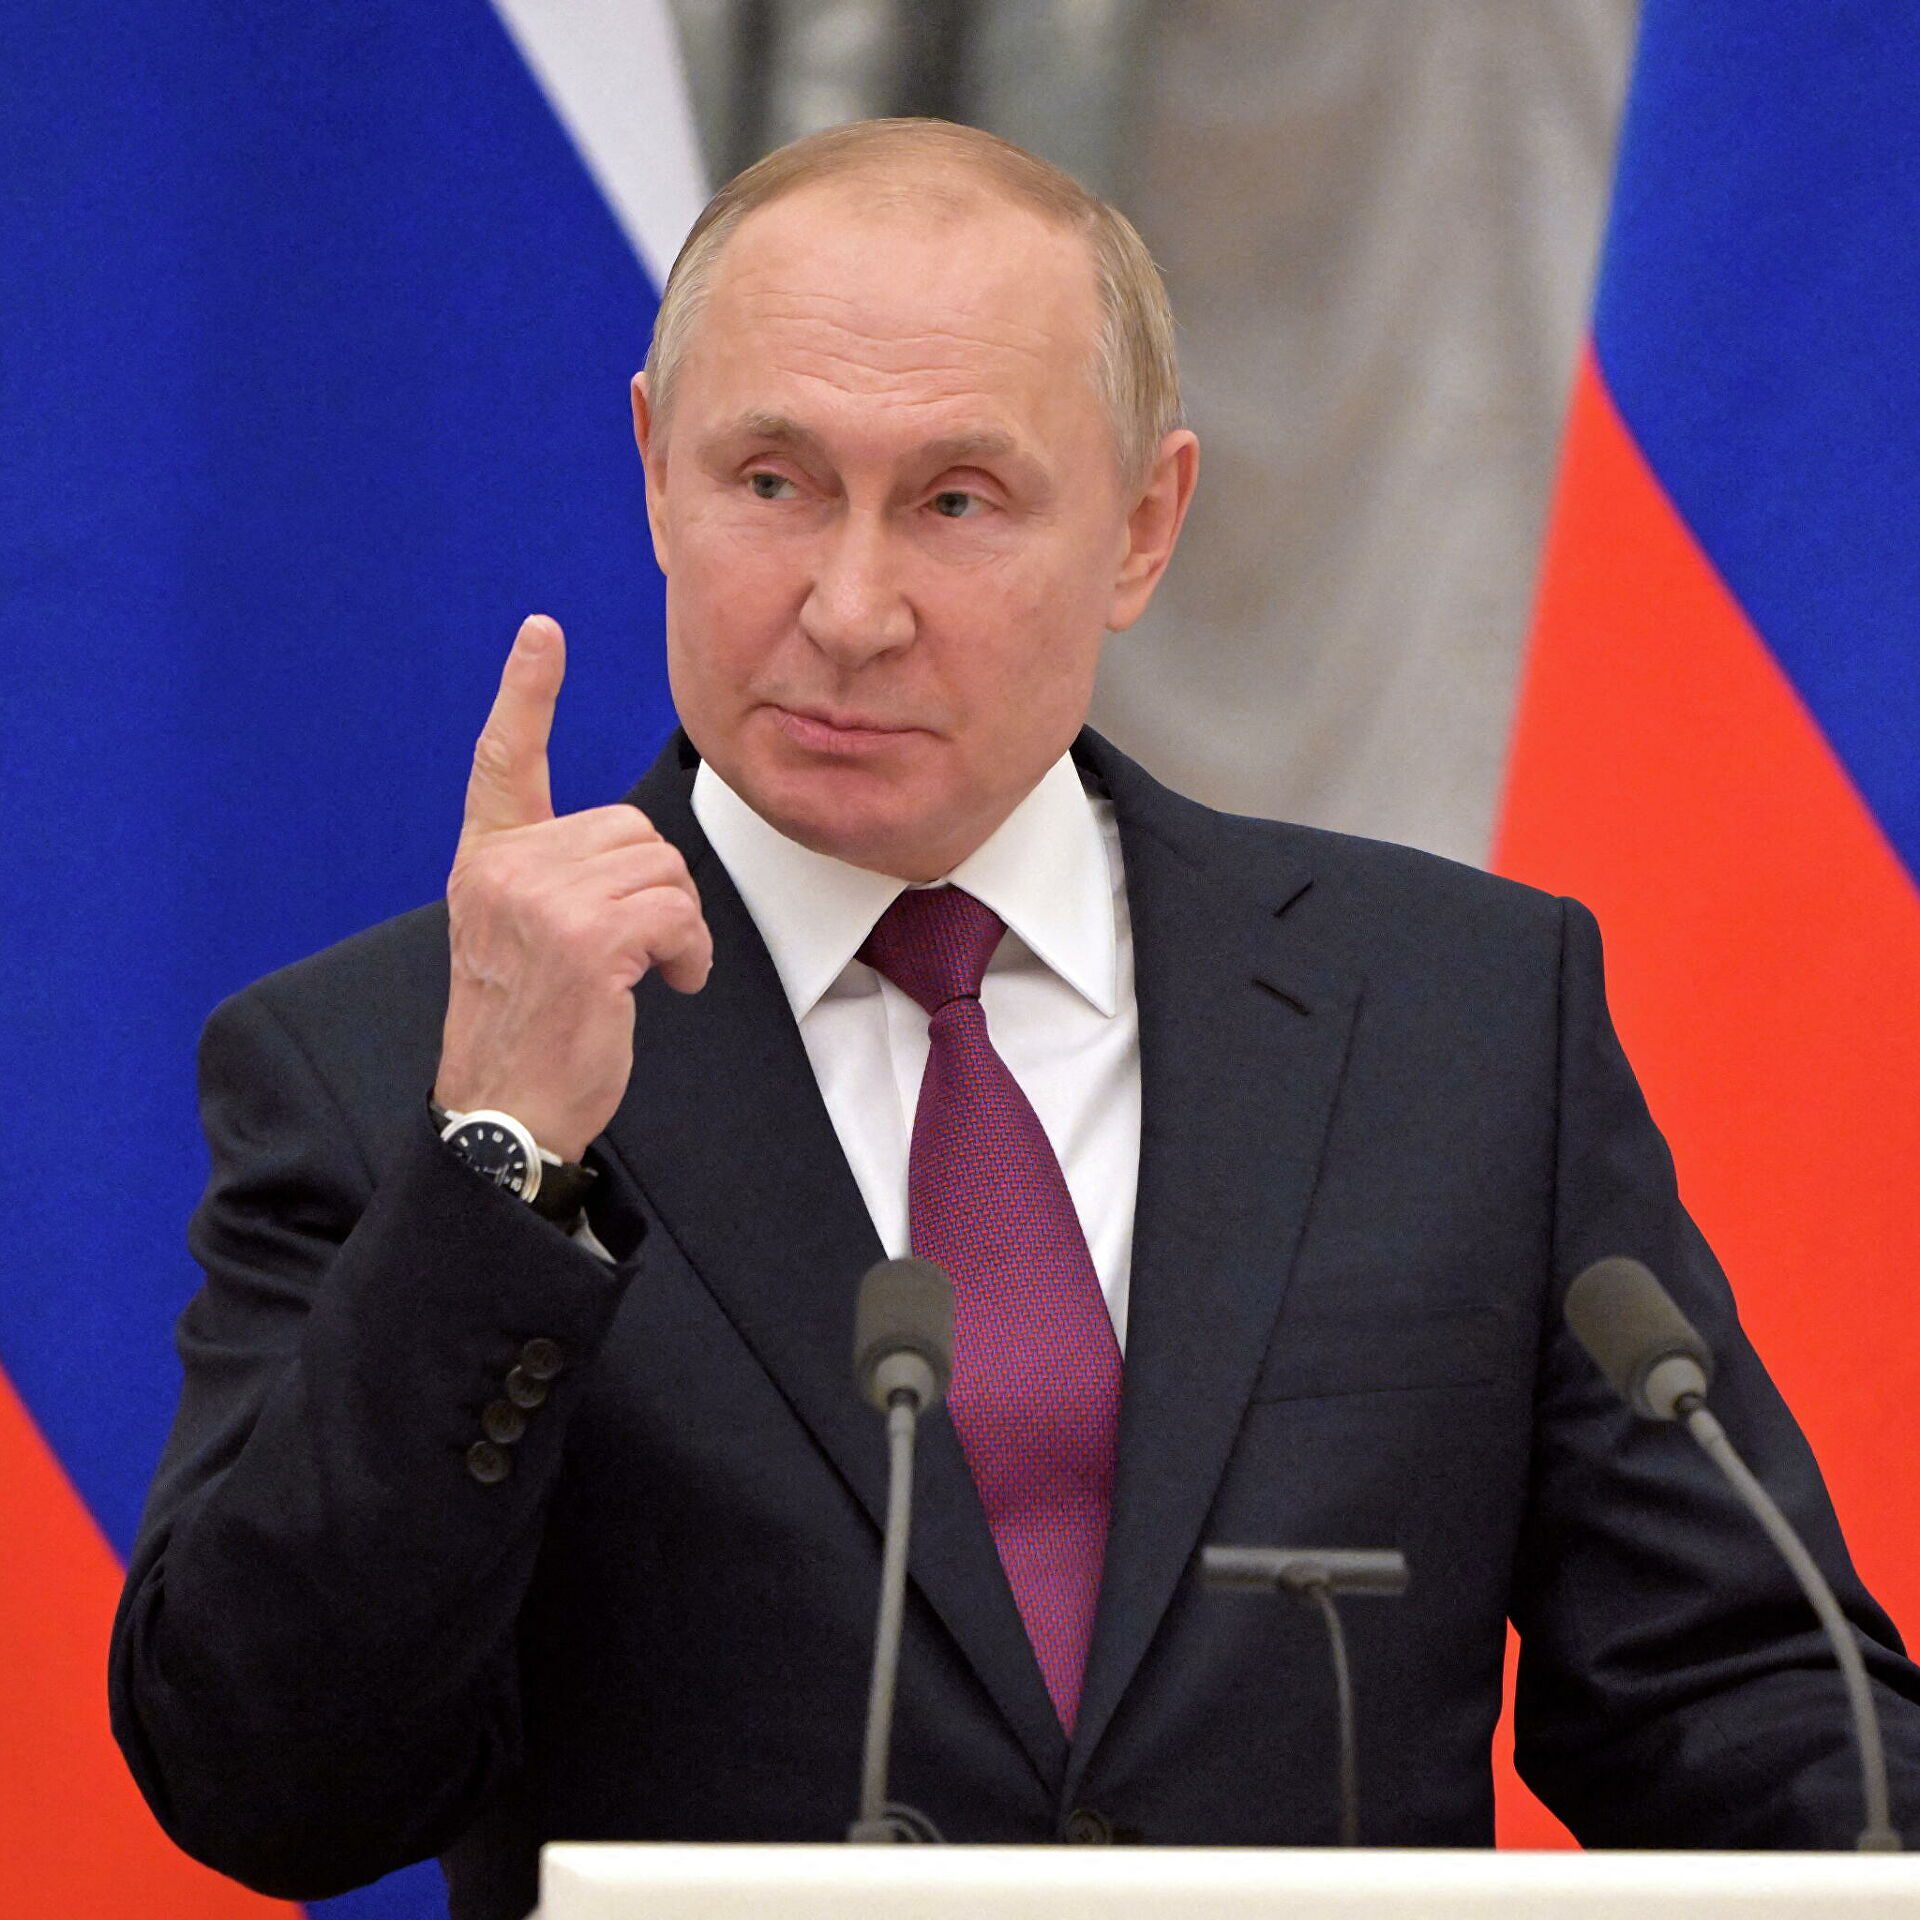 بوتين يعتبر “تحرير” ماريوبول الأوكرانية “نجاحا”